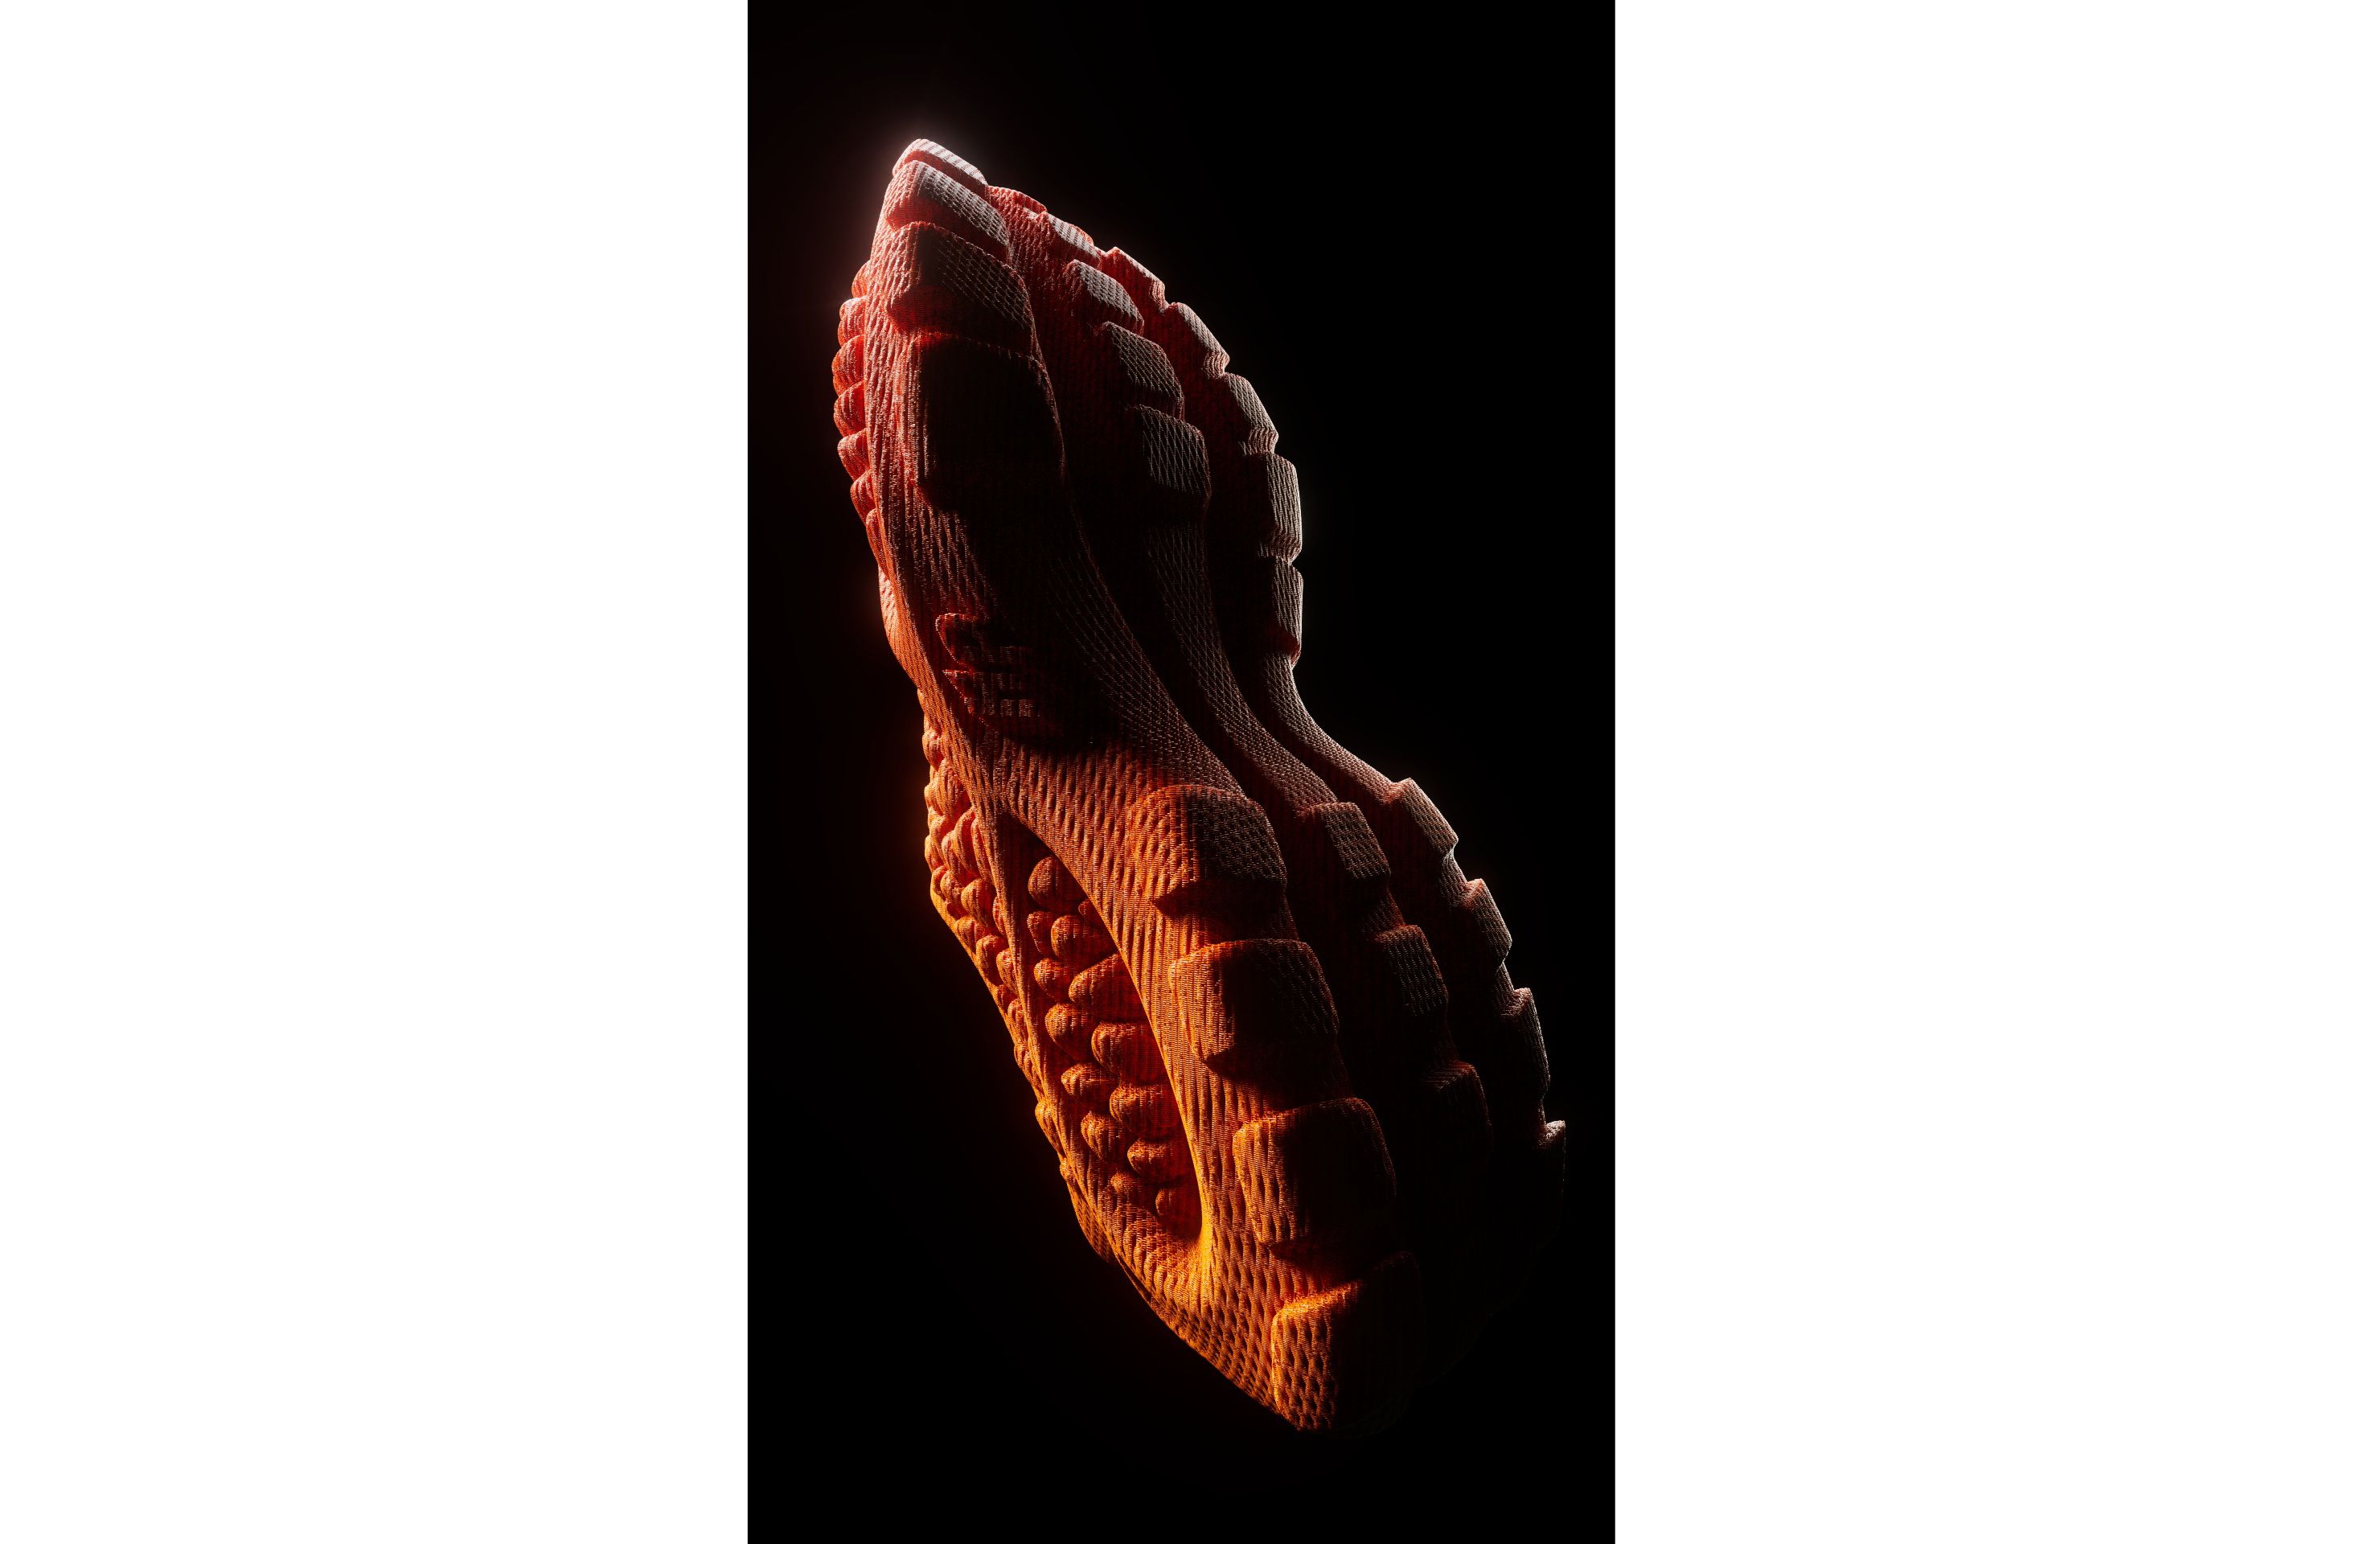 La HERON01, la chaussure entièrement imprimée en 3D - 3Dnatives